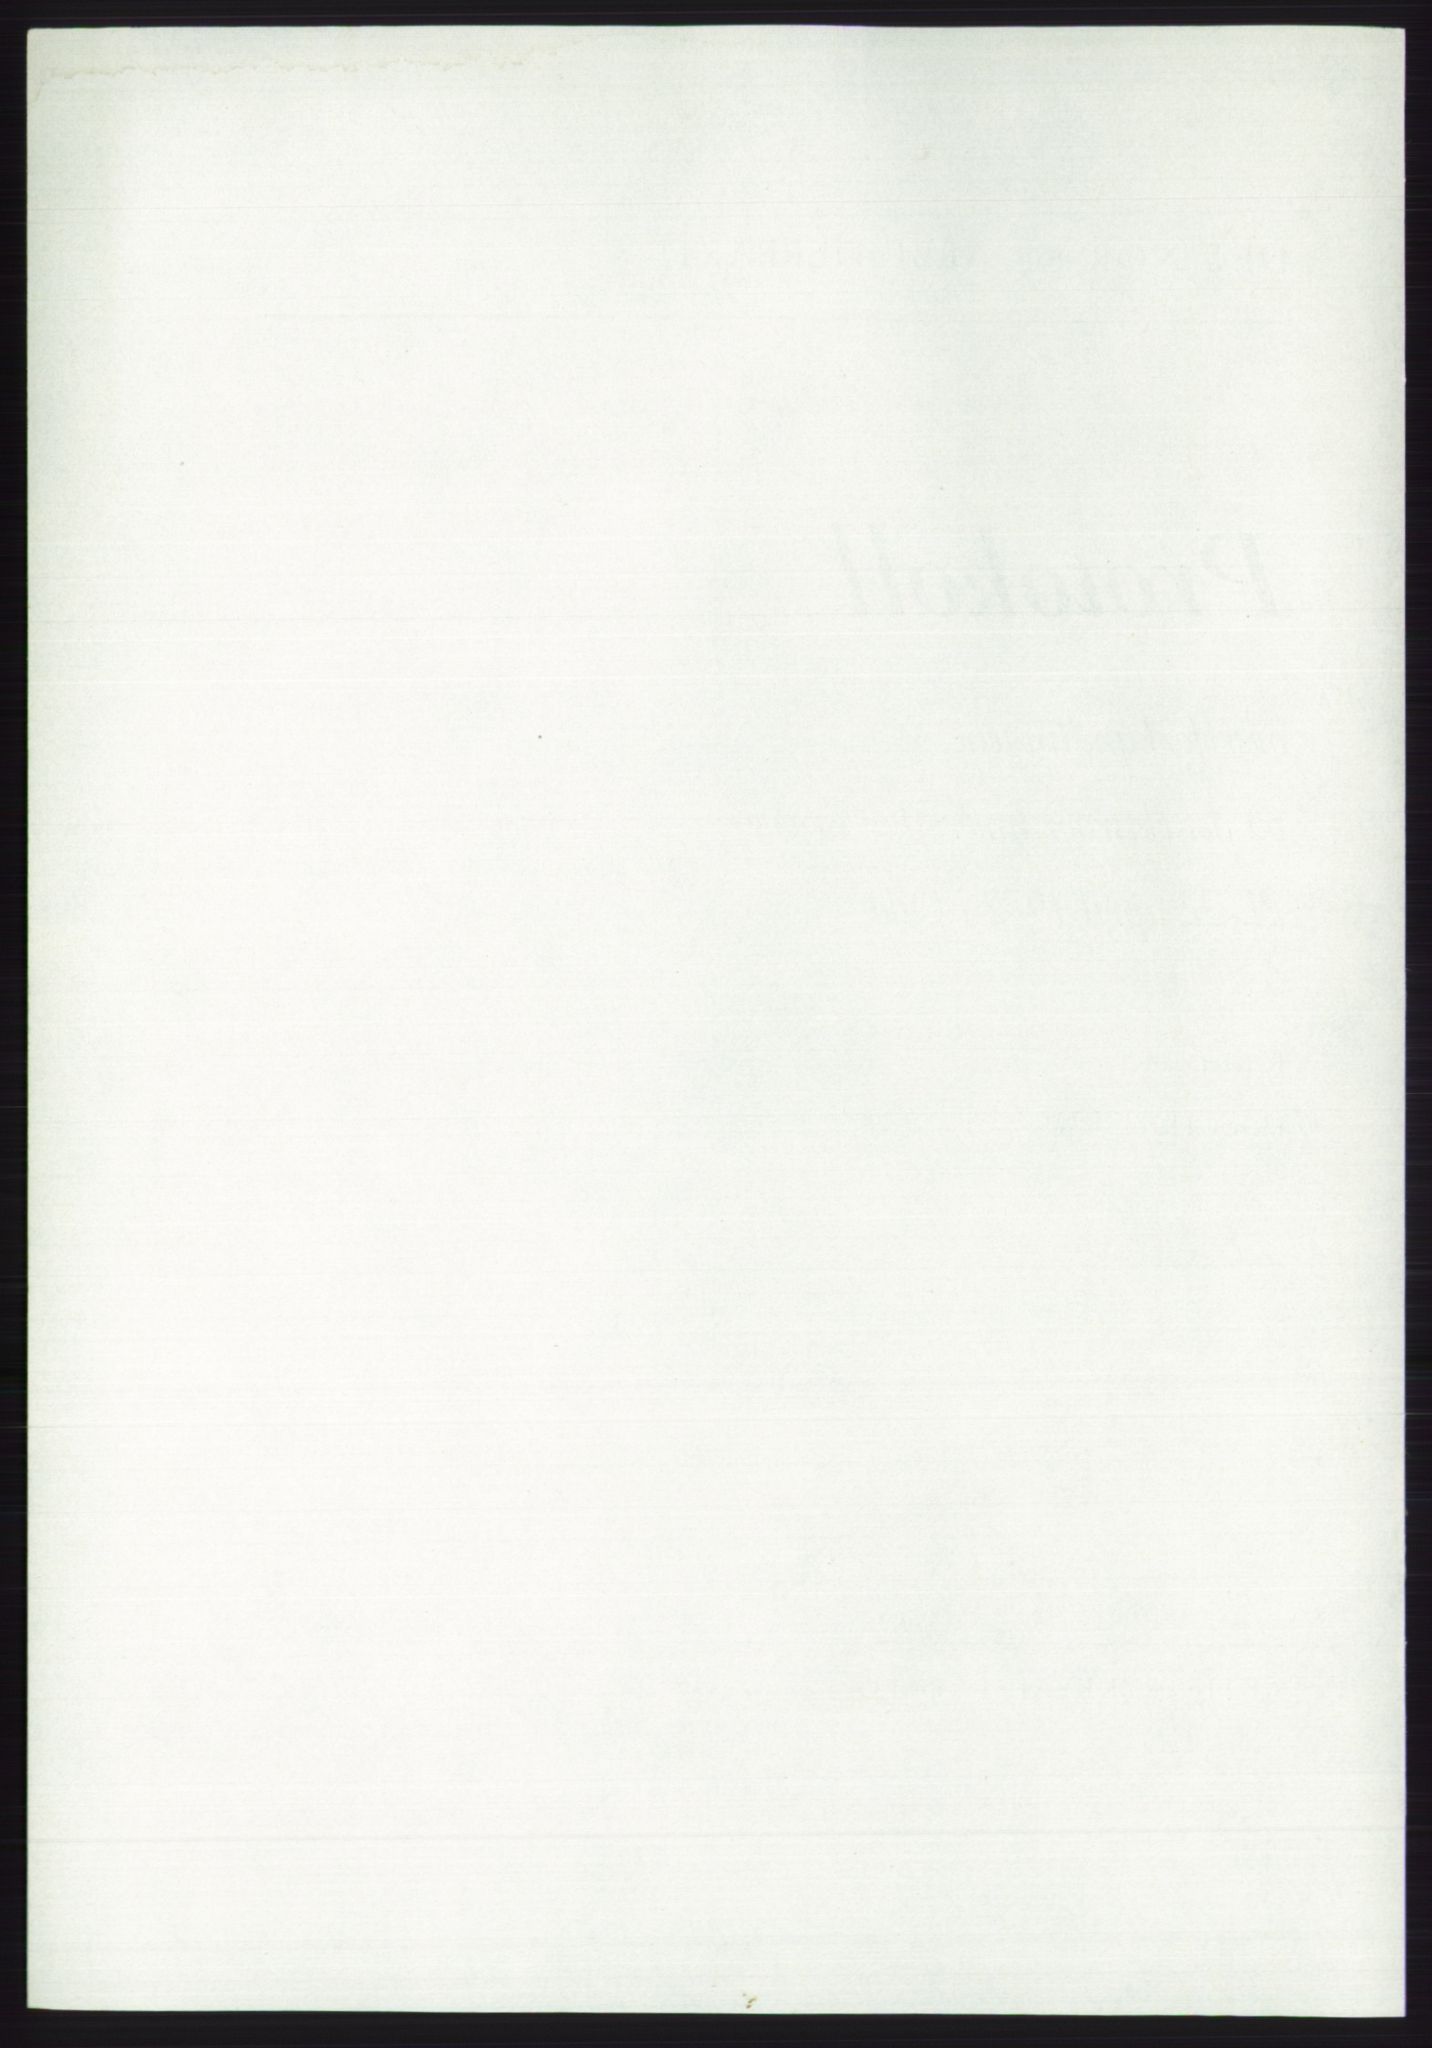 Det norske Arbeiderparti - publikasjoner, AAB/-/-/-: Protokoll over forhandlingene på det ekstraordinære landsmøte 21.-22. april 1972, 1972